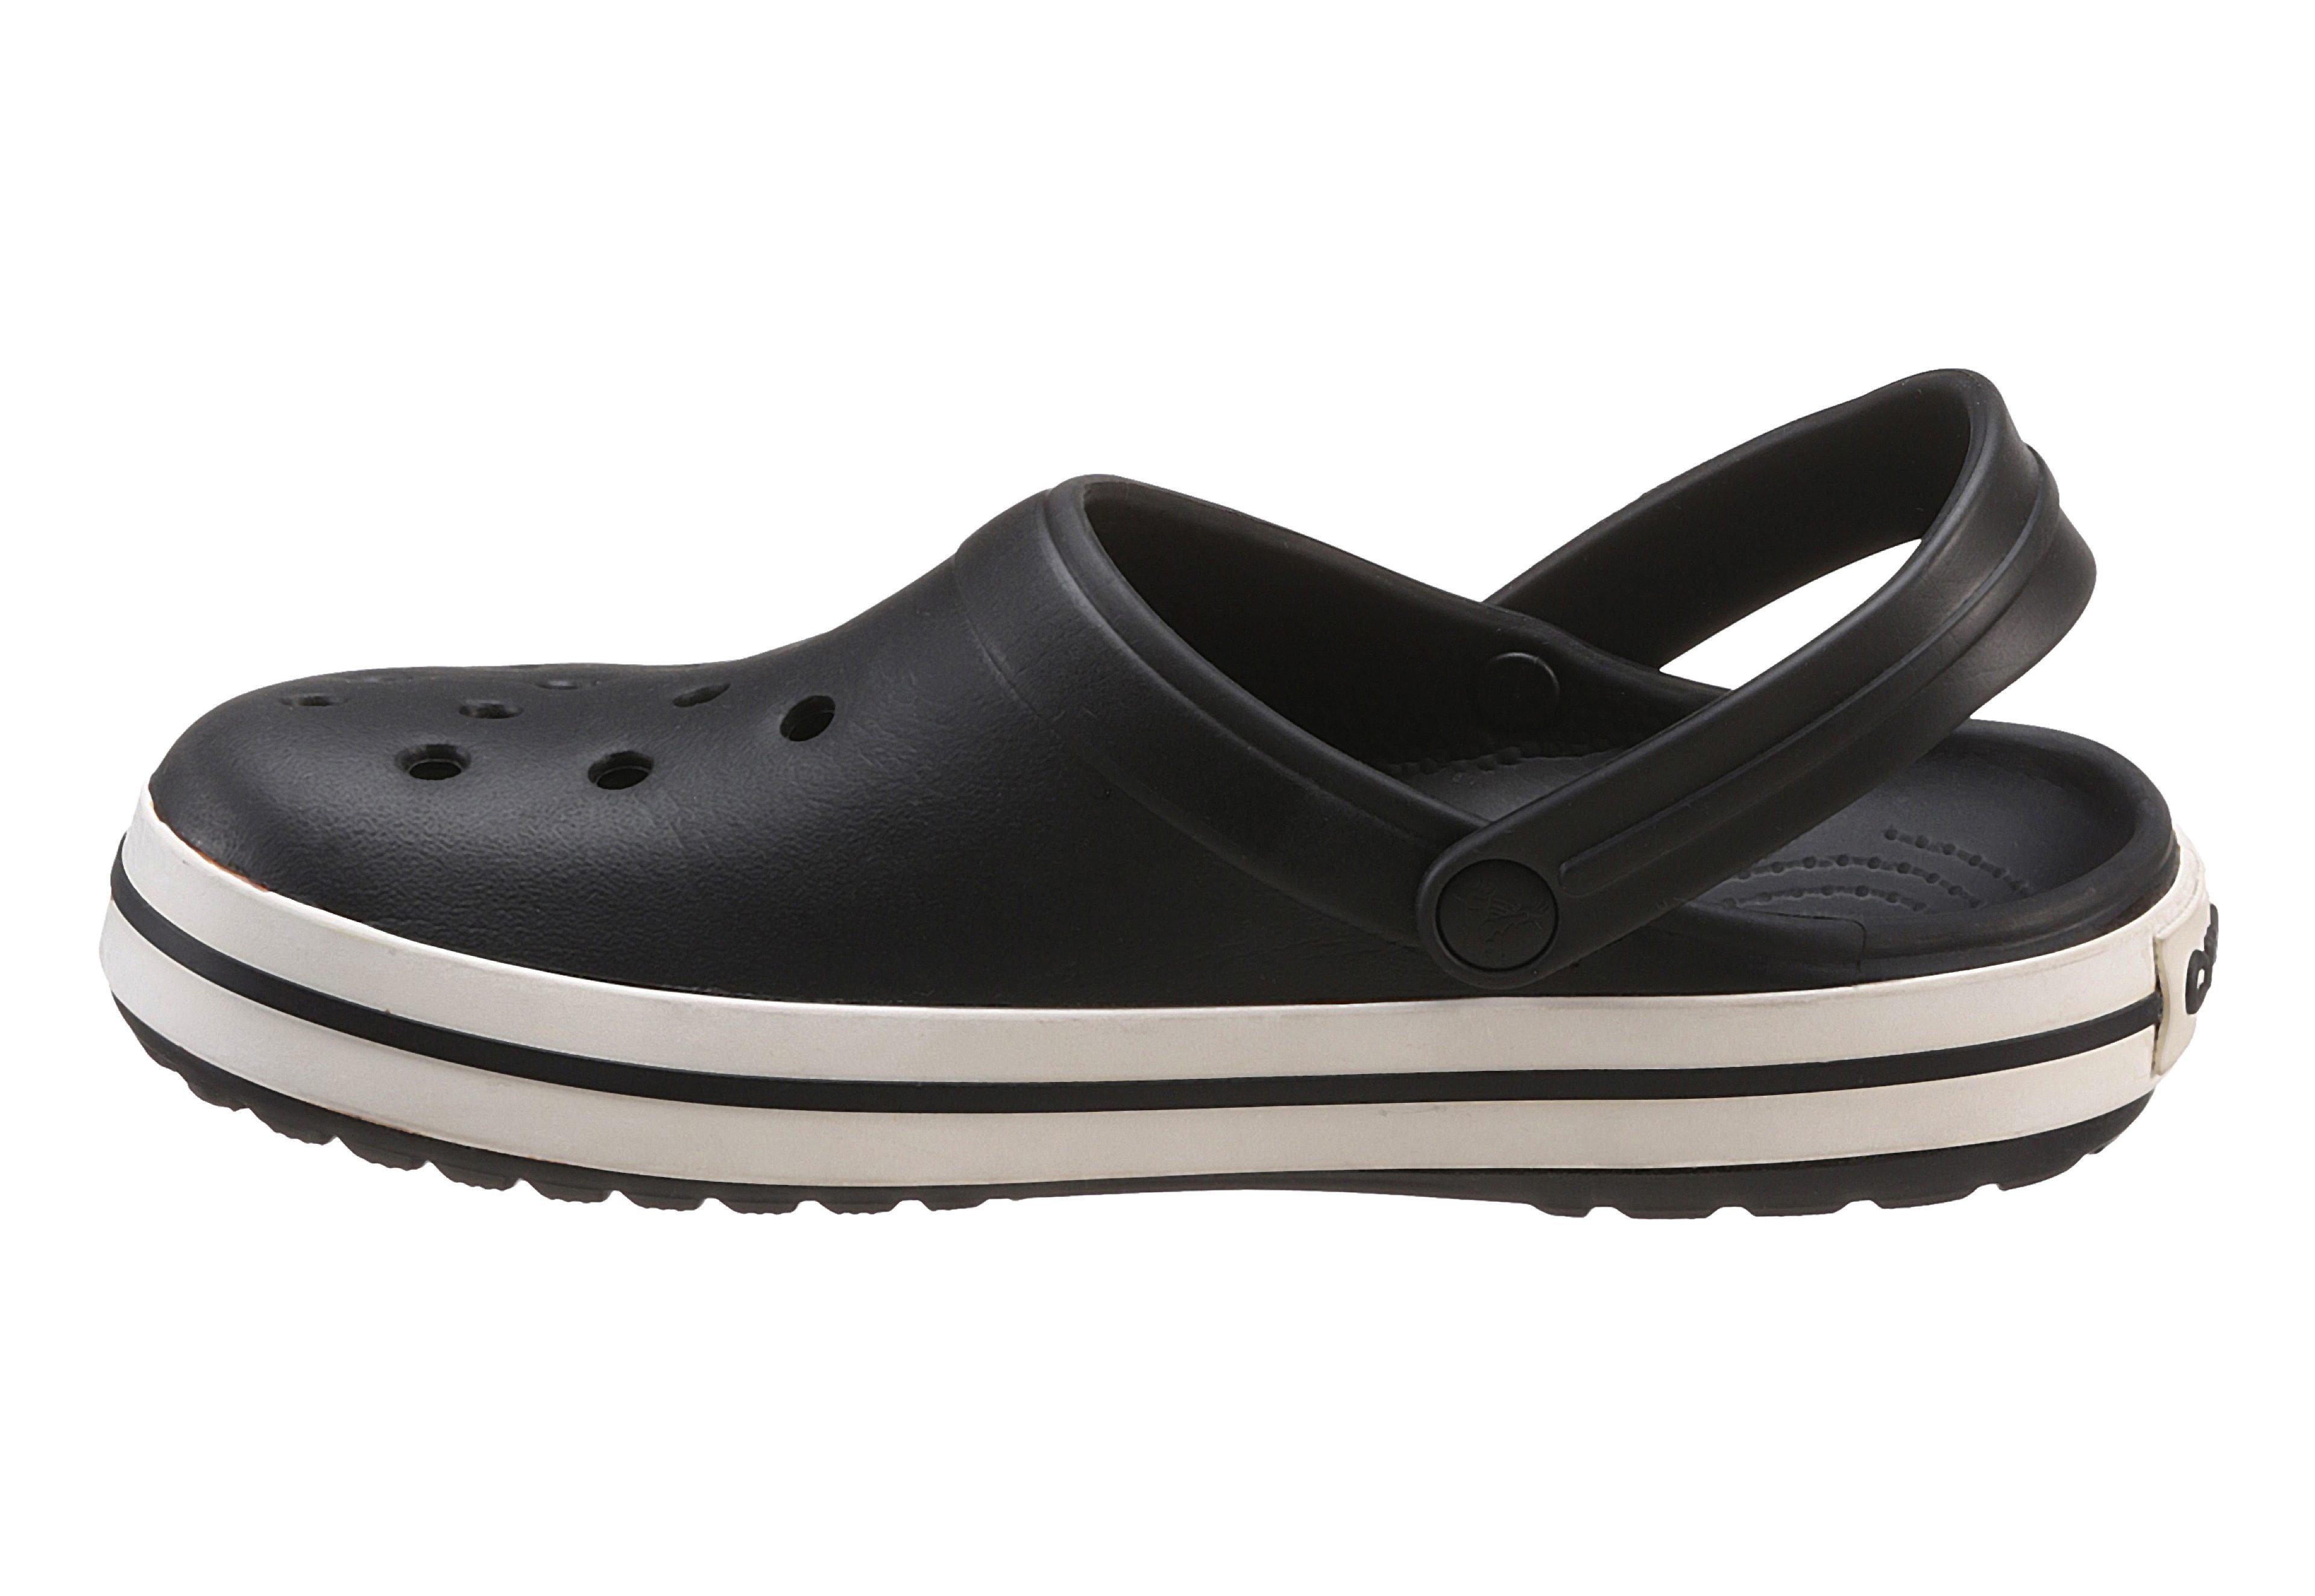 Crocs farbiger Laufsohle schwarz-weiß mit Crocband Clog